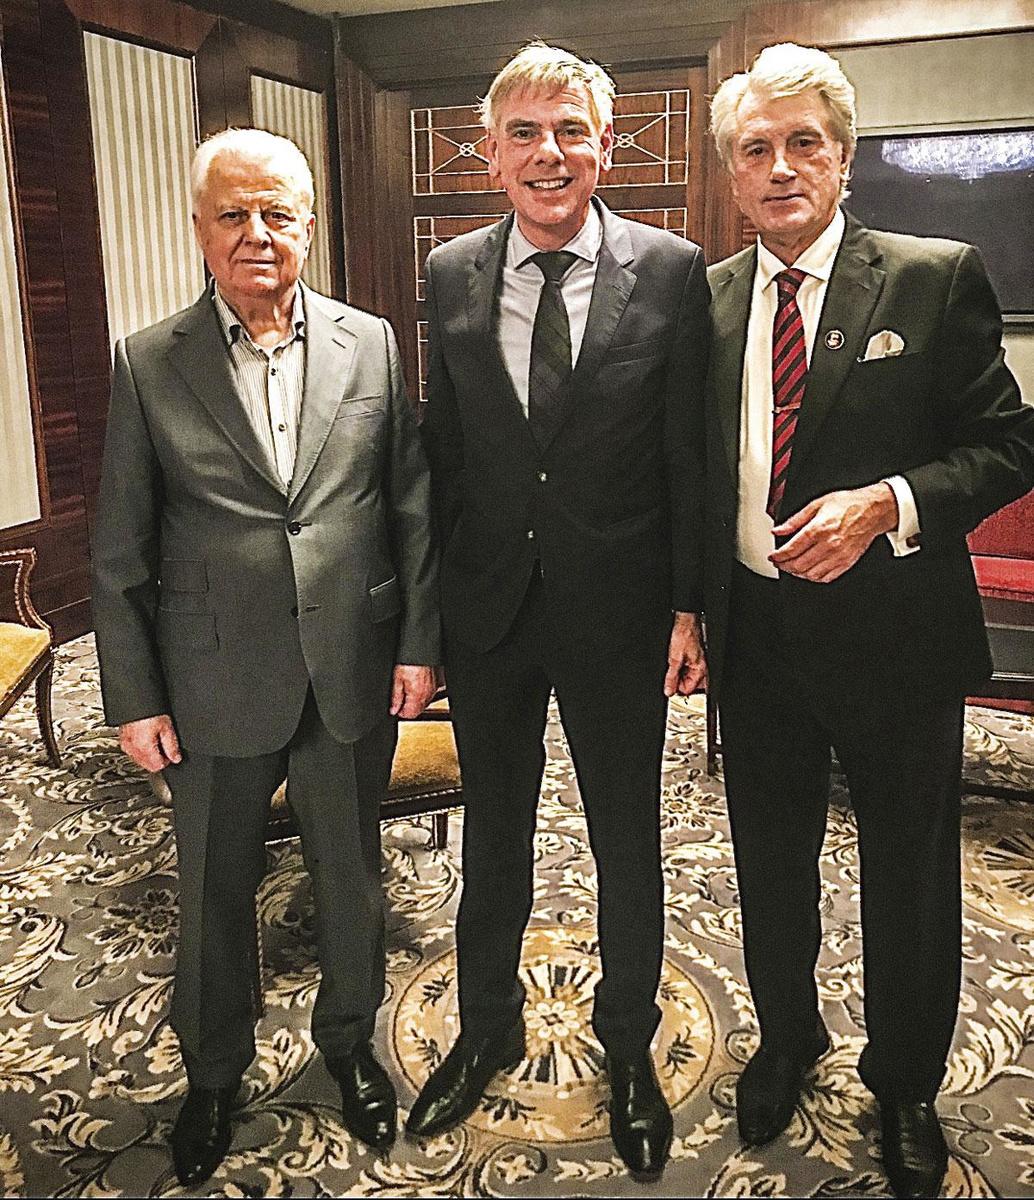 Filip Dewinter tussen twee Oekraïense ex-presidenten, Leonid Kravtsjoek en Viktor Joesjtsjenko. De foto werd in 2018 in Kiev genomen.